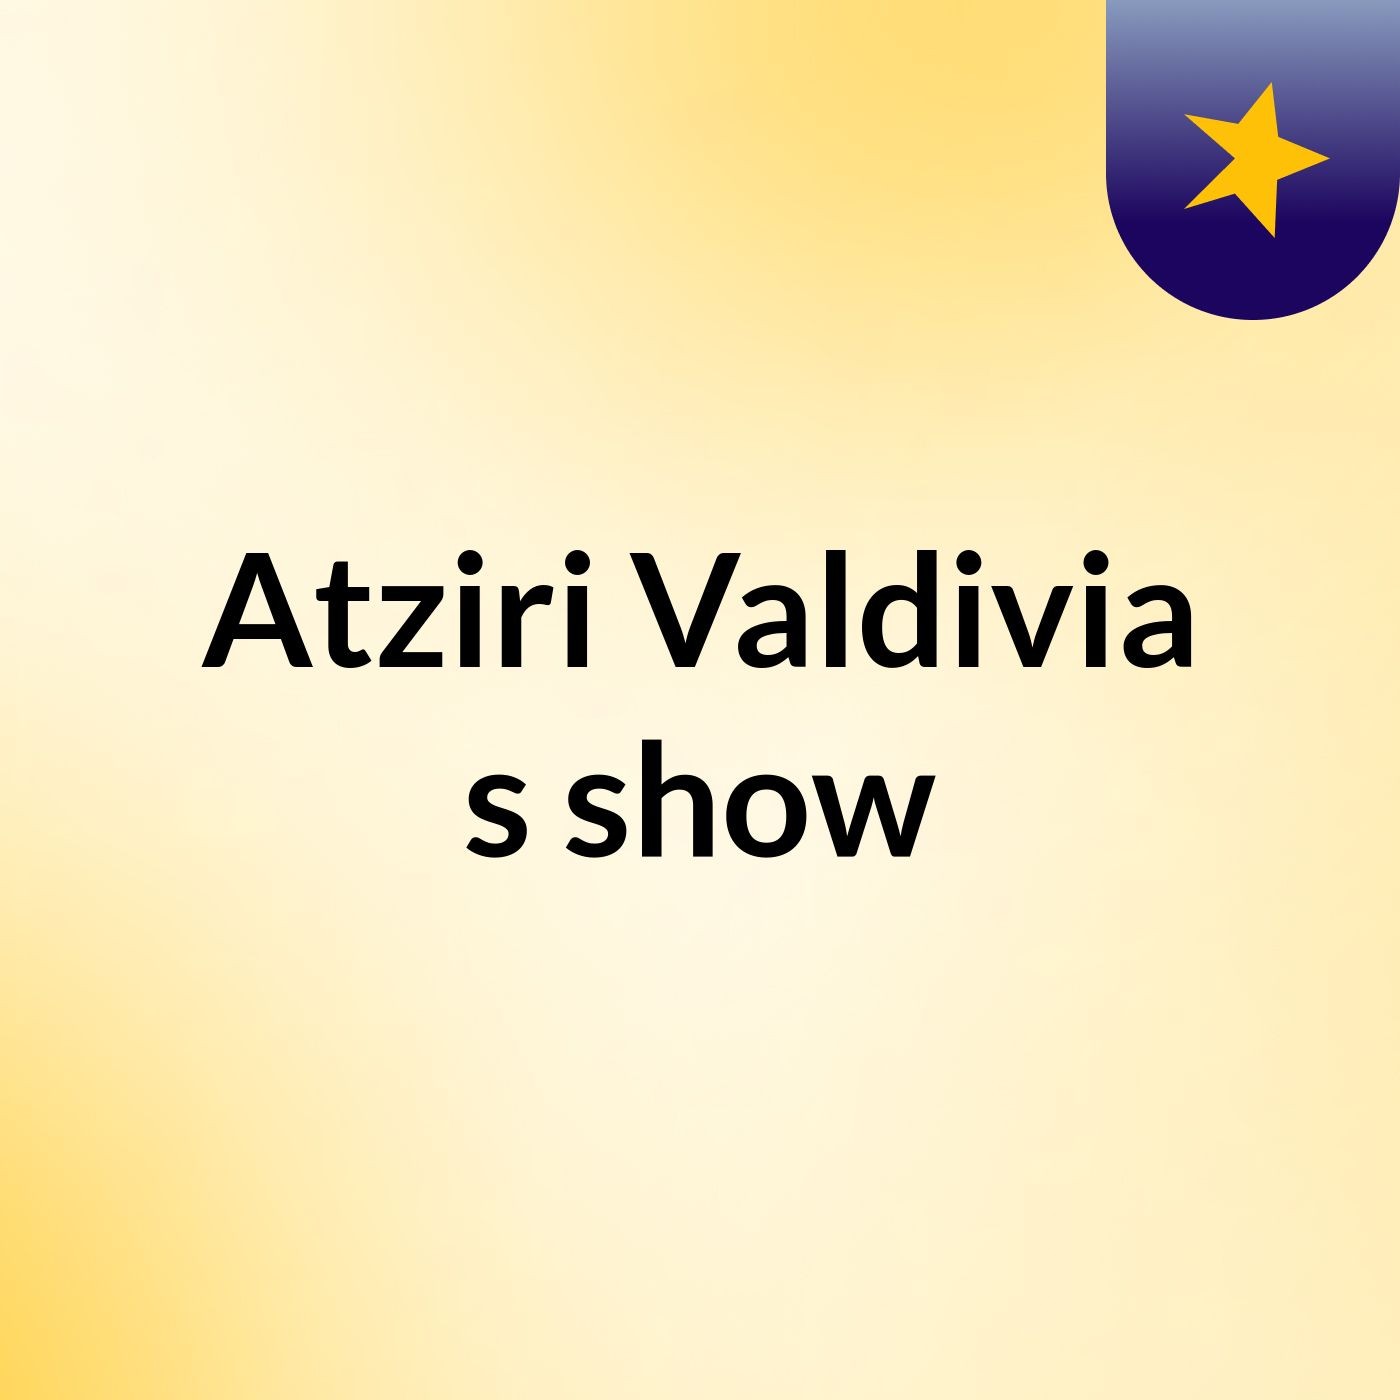 Atziri Valdivia's show